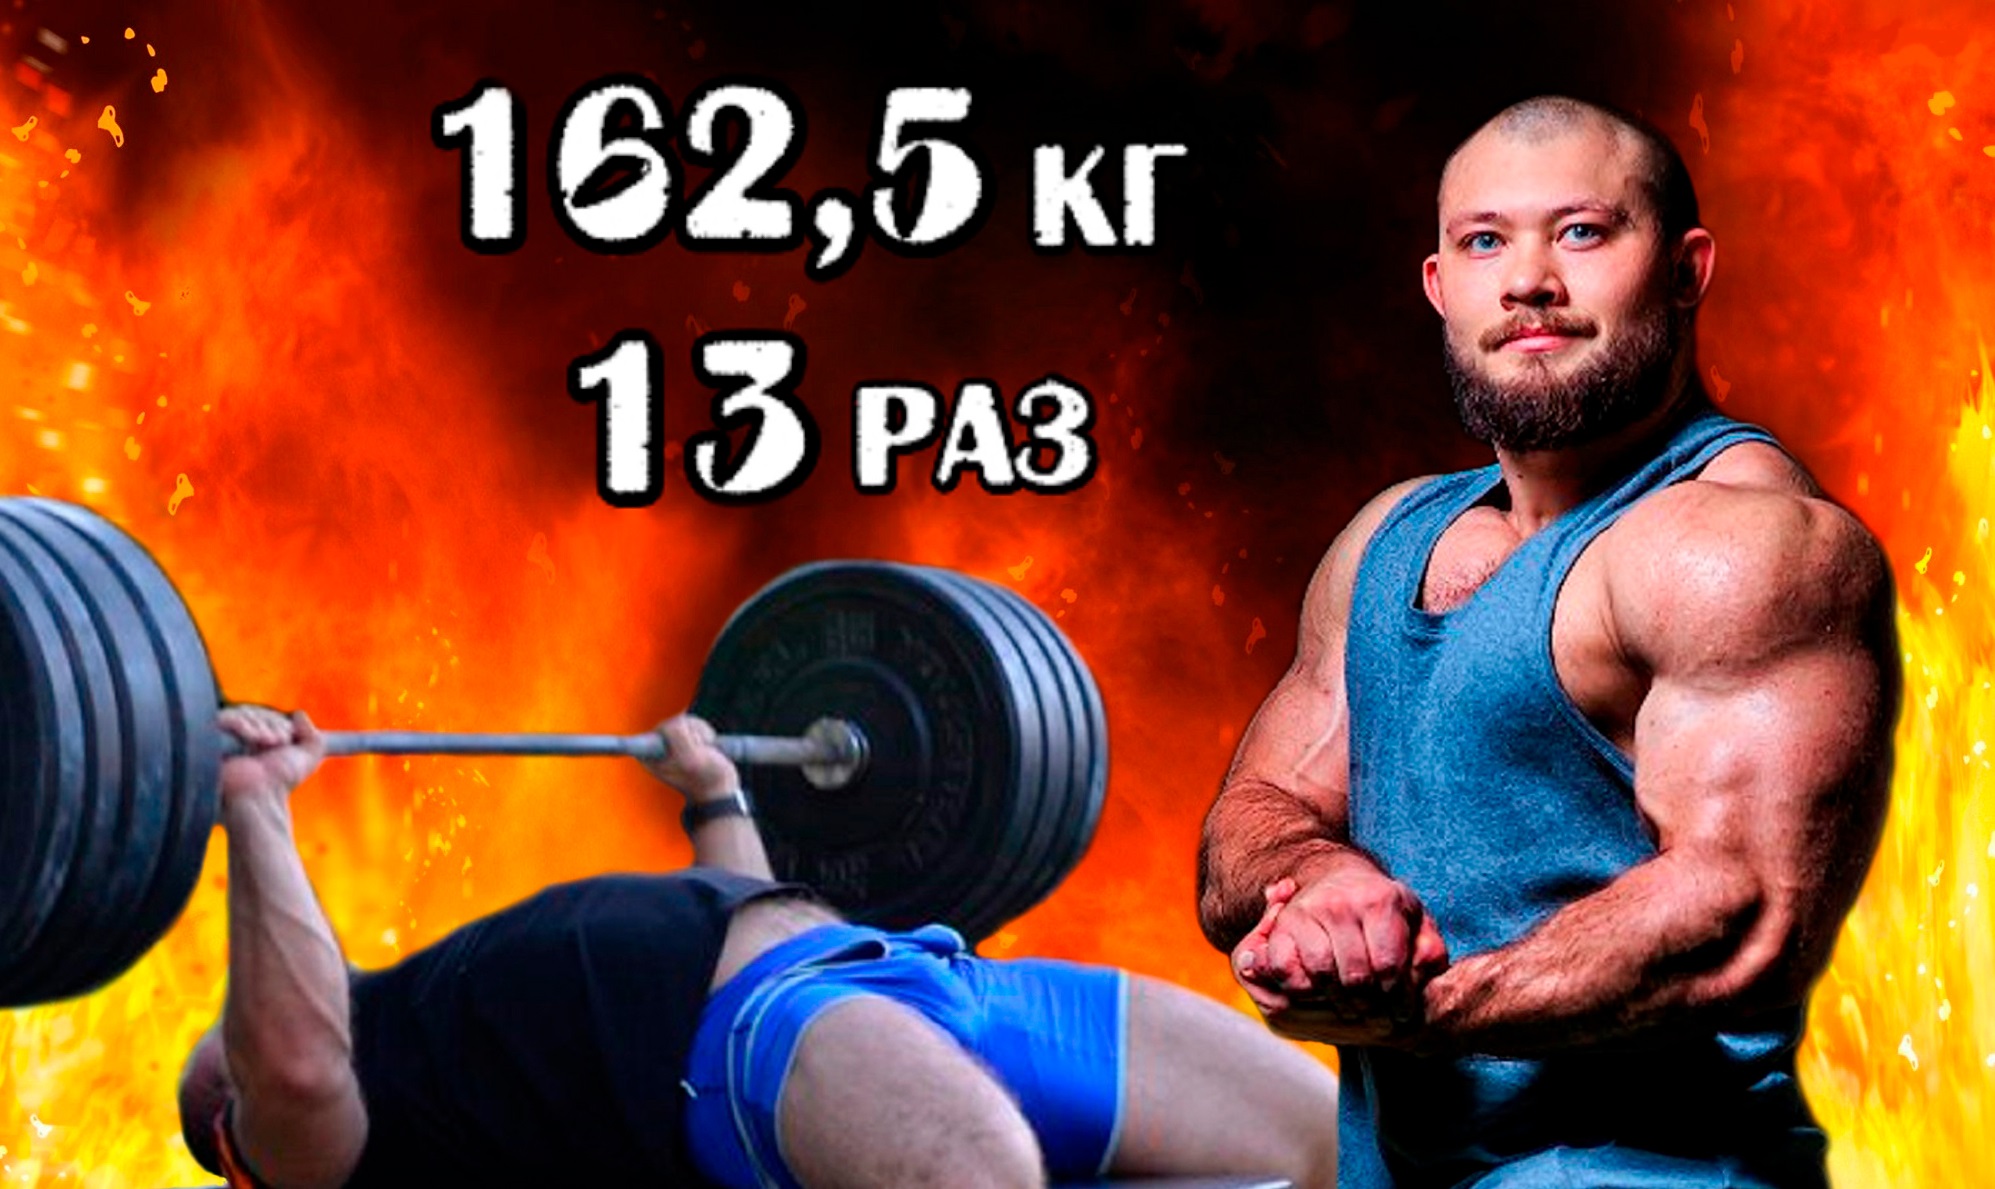 Павел Бочкарев. РУССКИЙ ЖИМ 162,5 кг на 13 раз, весовая категория до 110 кг.